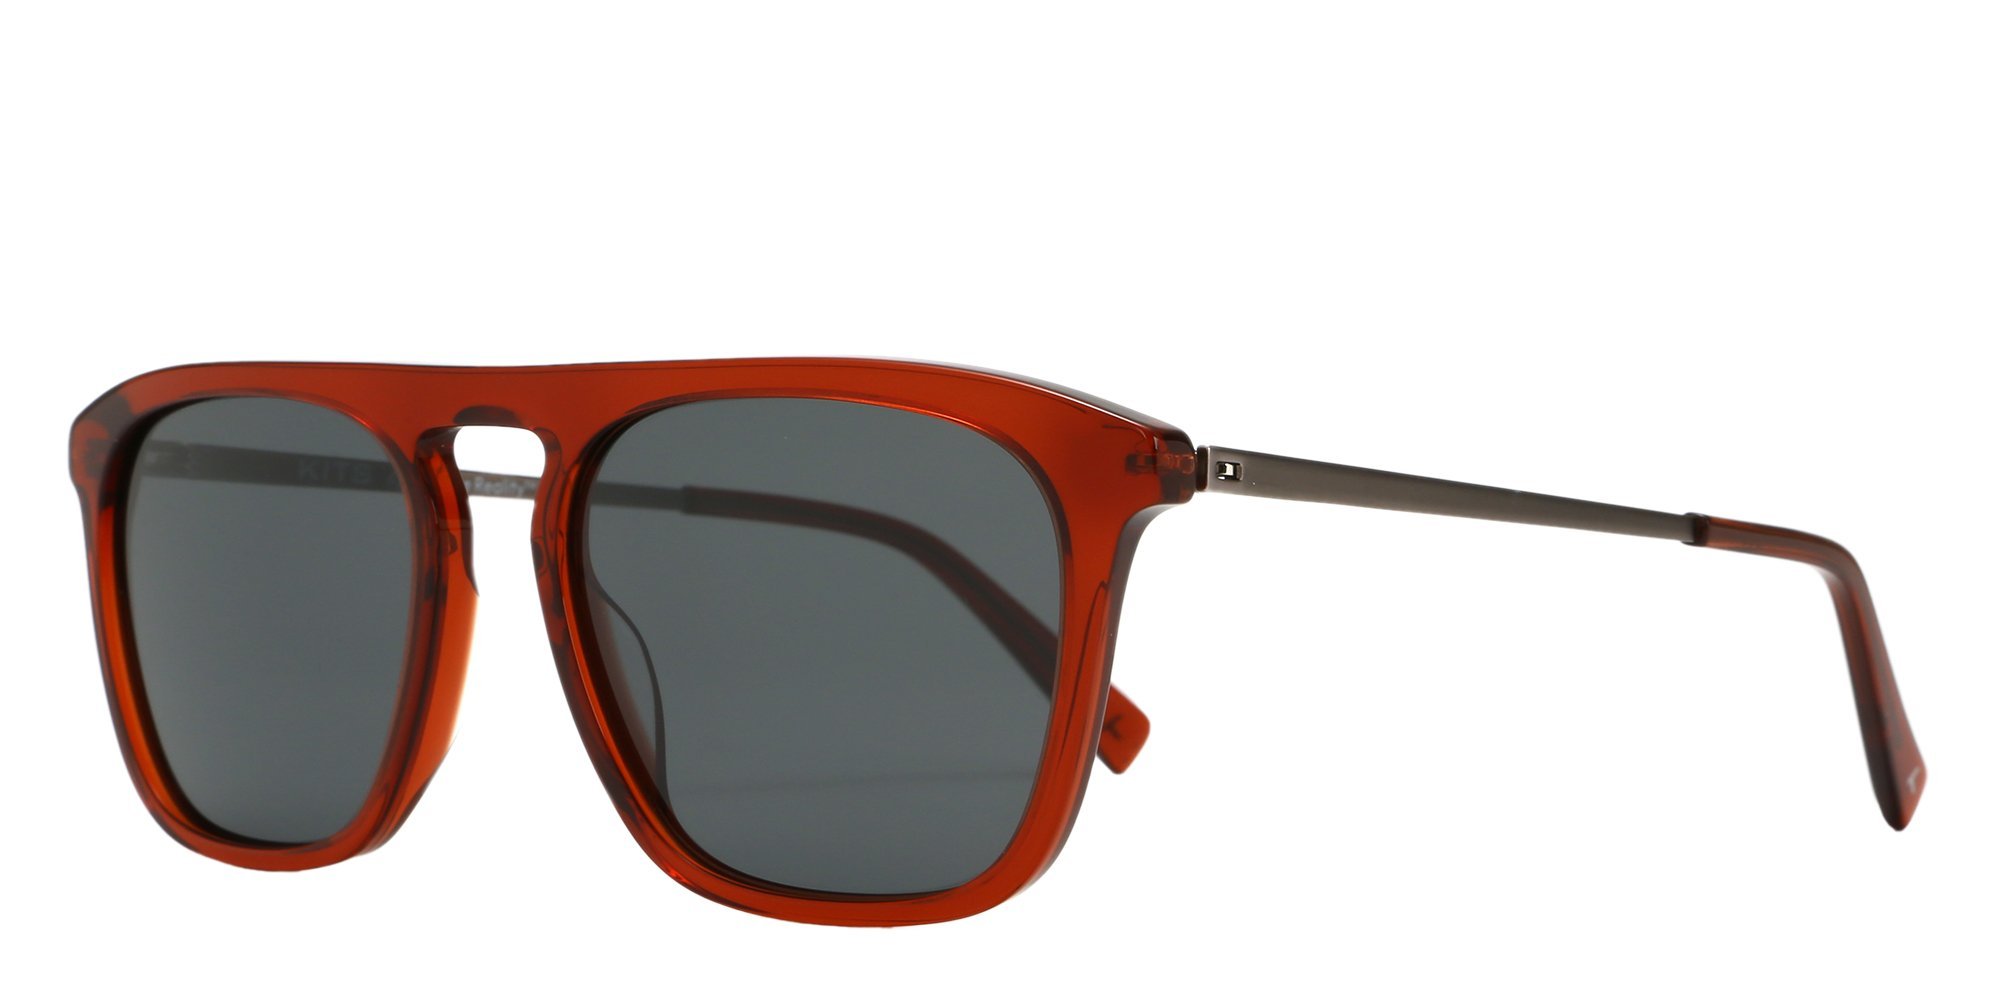 USA1 Polarized Sport Sunglasses by XX2i Optics